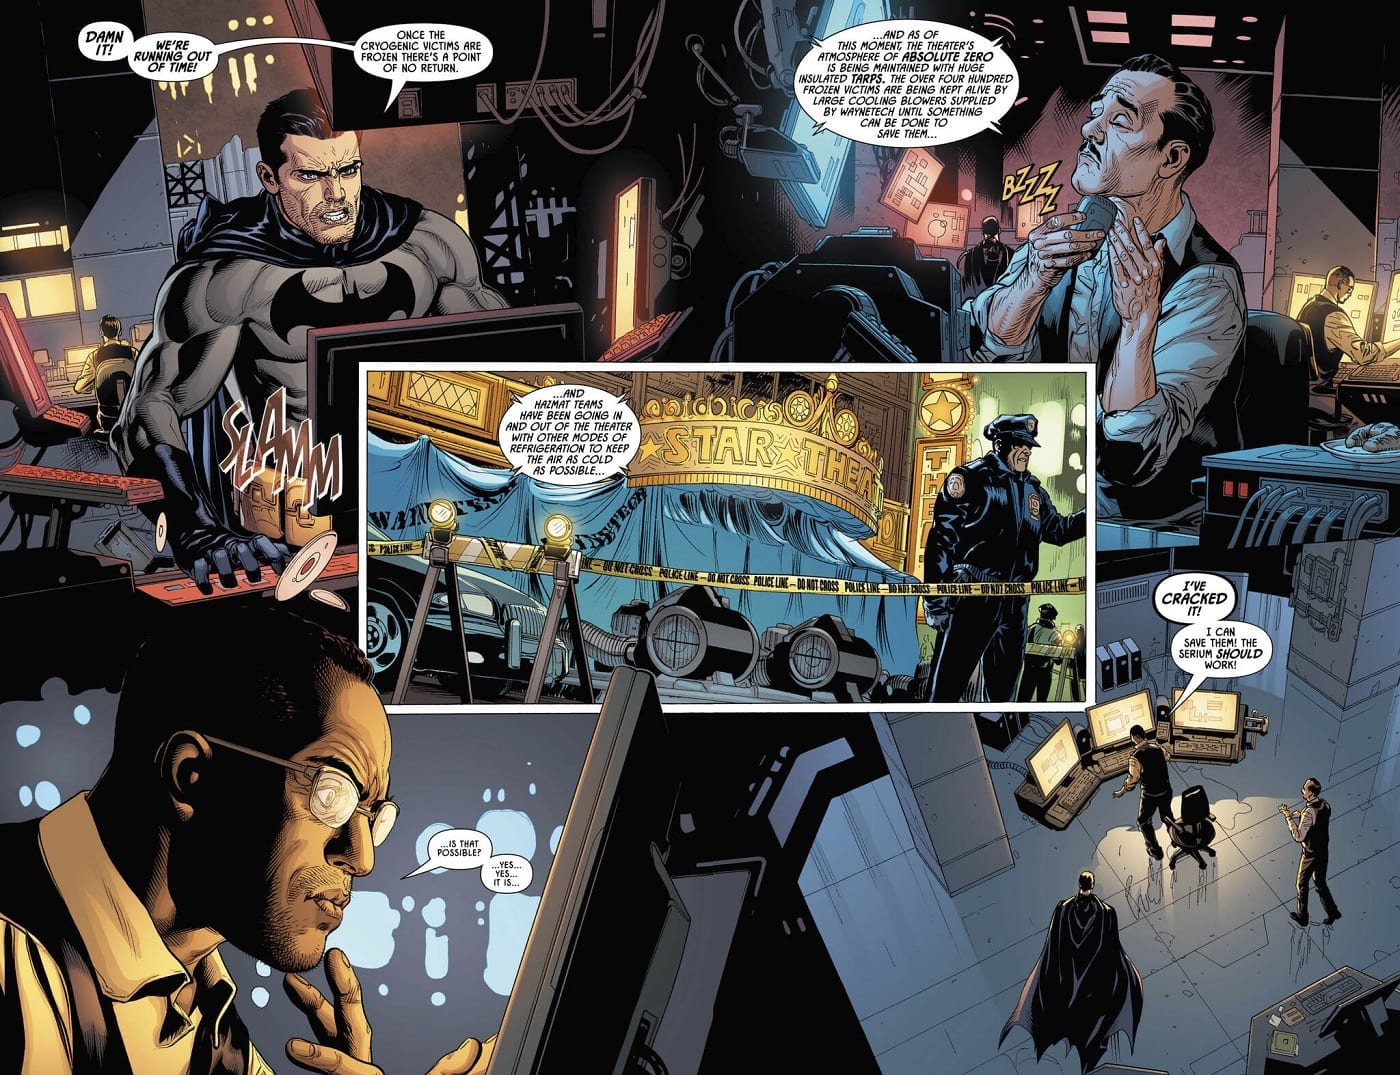 Detective Comics #1015